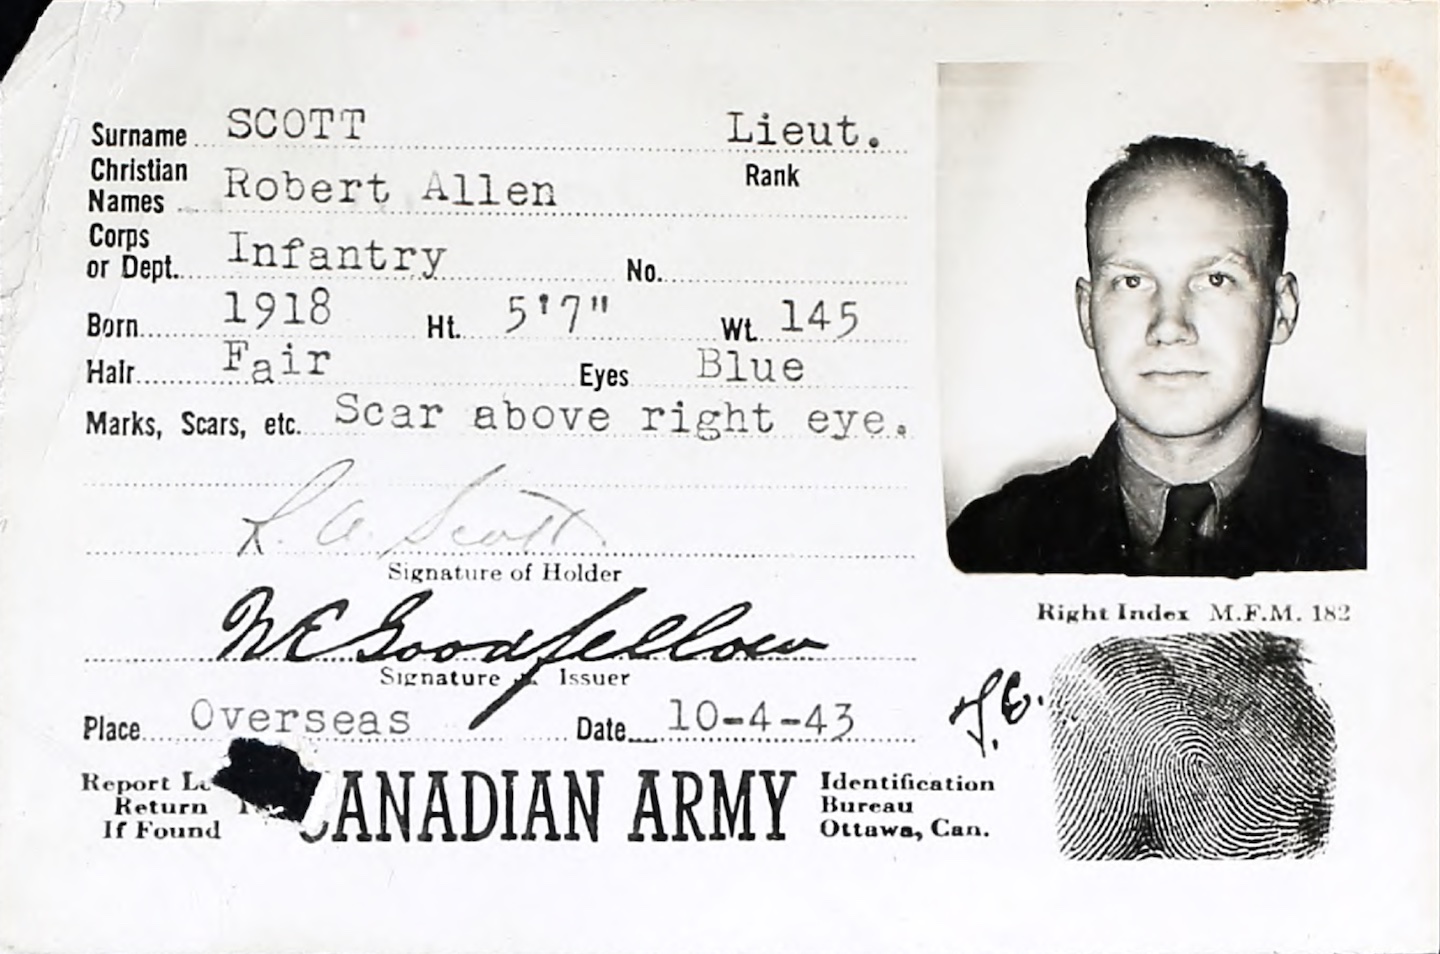 Robert Allen Scott’s military ID card, dated 1944